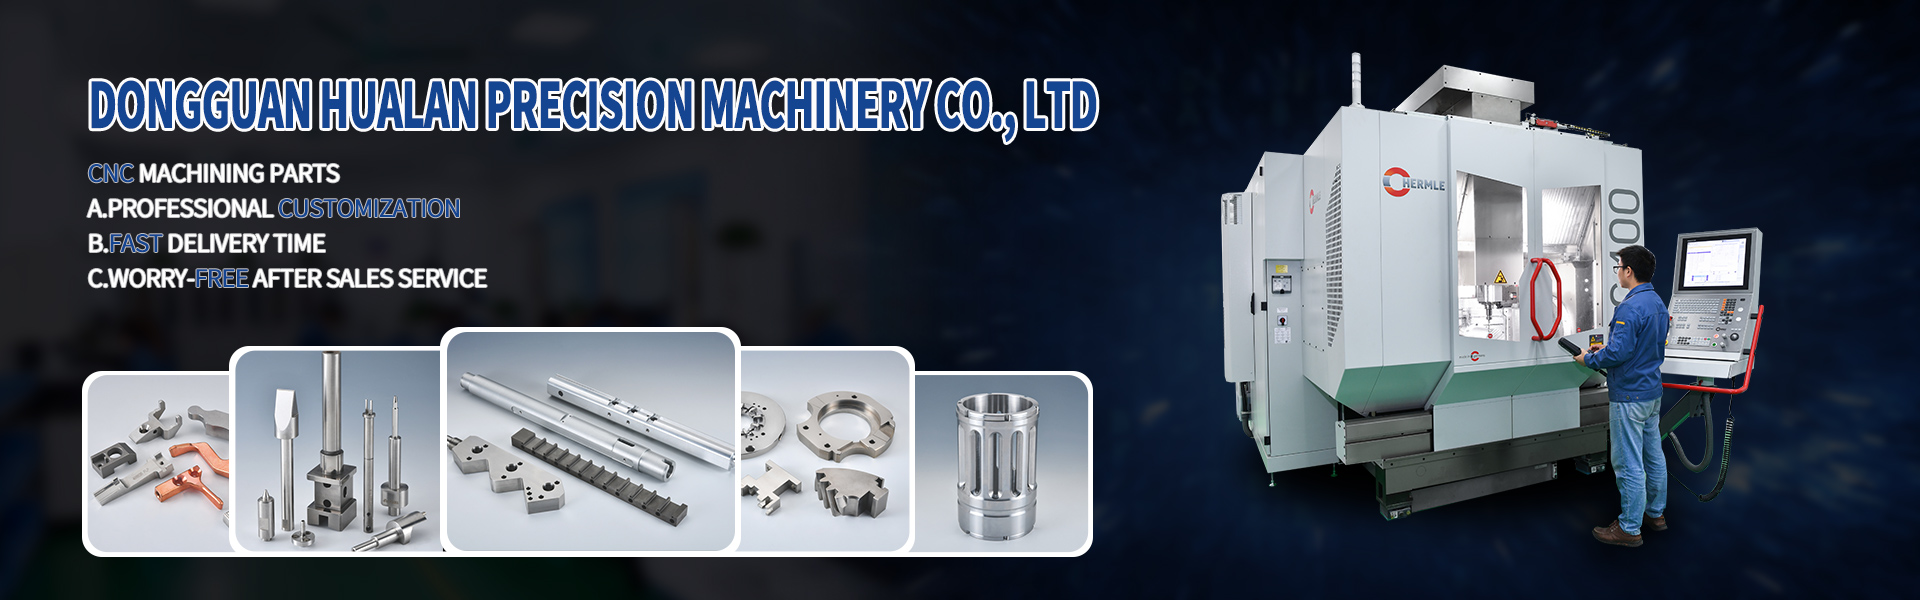 CNC-bearbetningsdelar, turning och fräsning, linjeskärning,Dongguan Hualan Precision Machinery Co., LTD